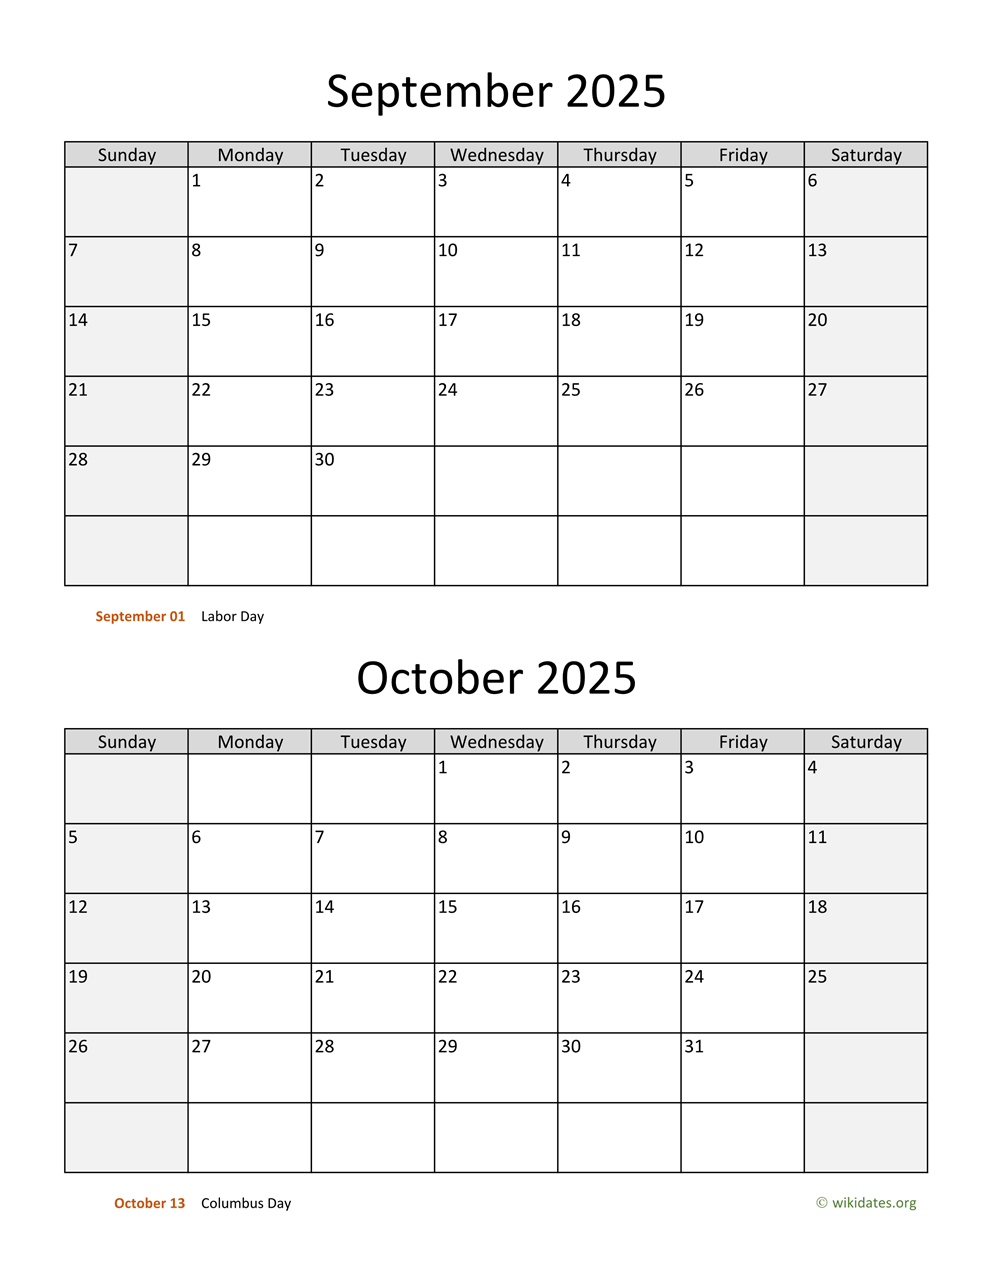 September And October 2025 Calendar WikiDates